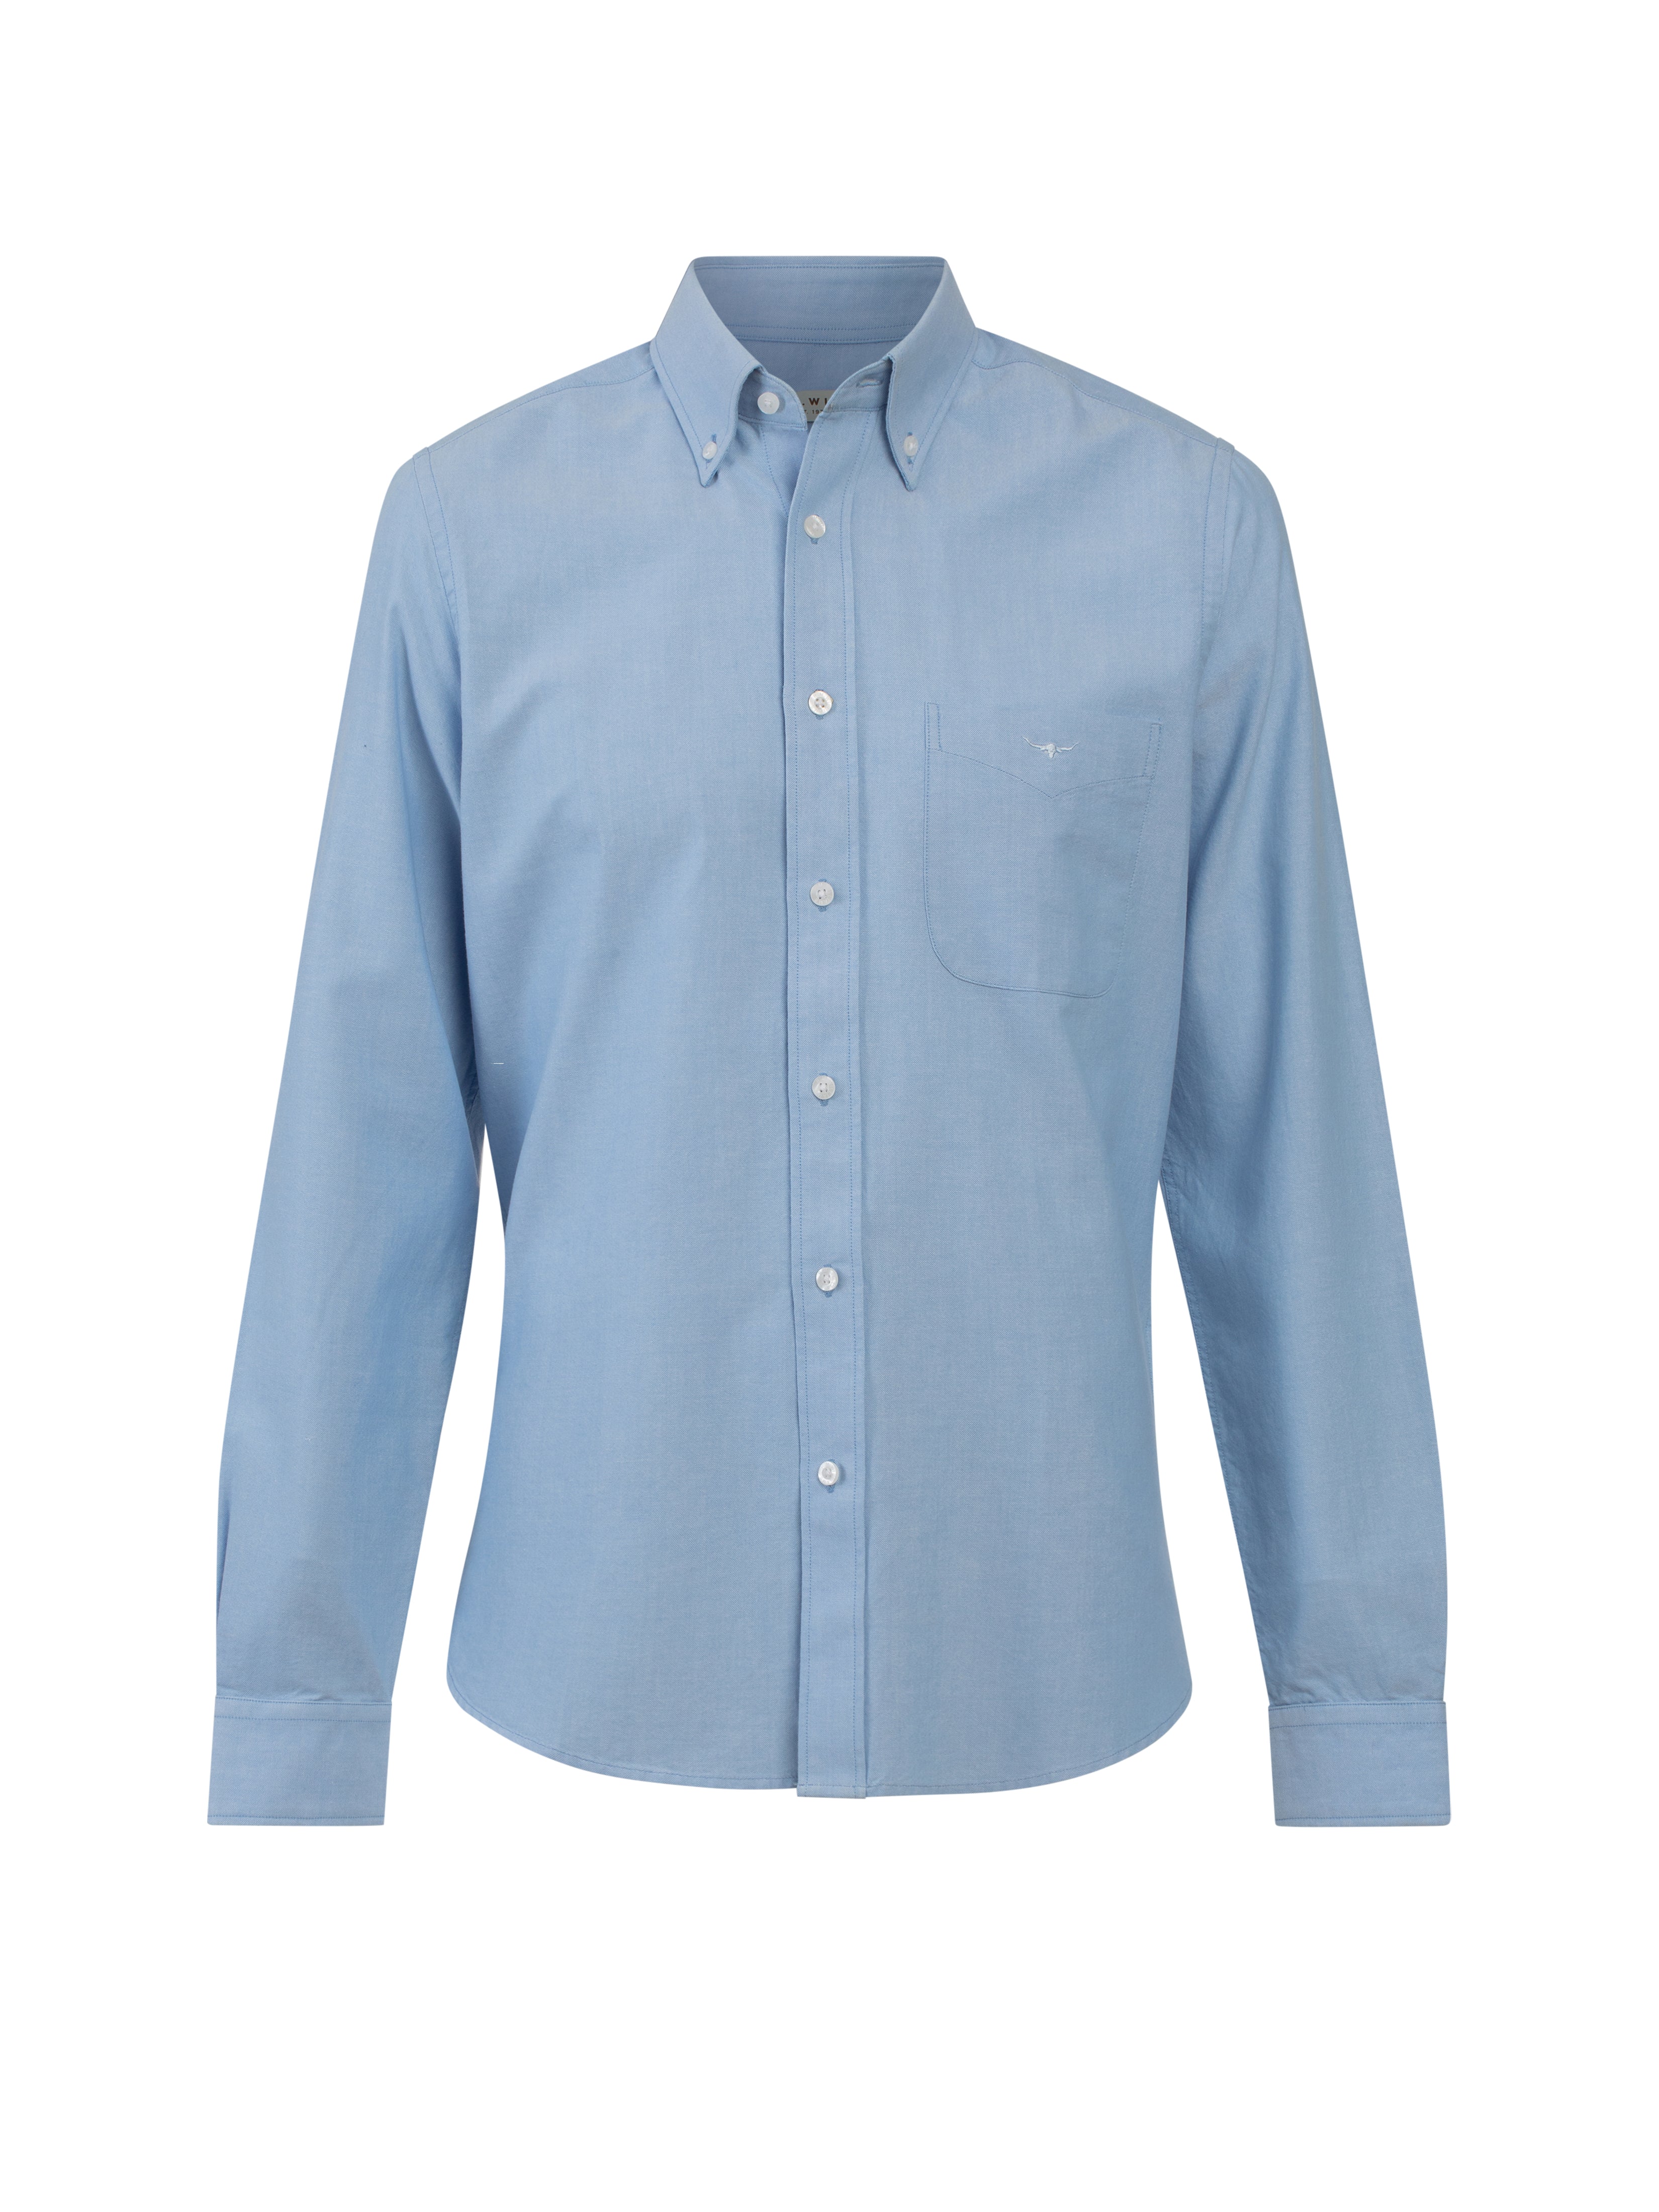 Jervis button down shirt - light blue Long Sleeve Shirts